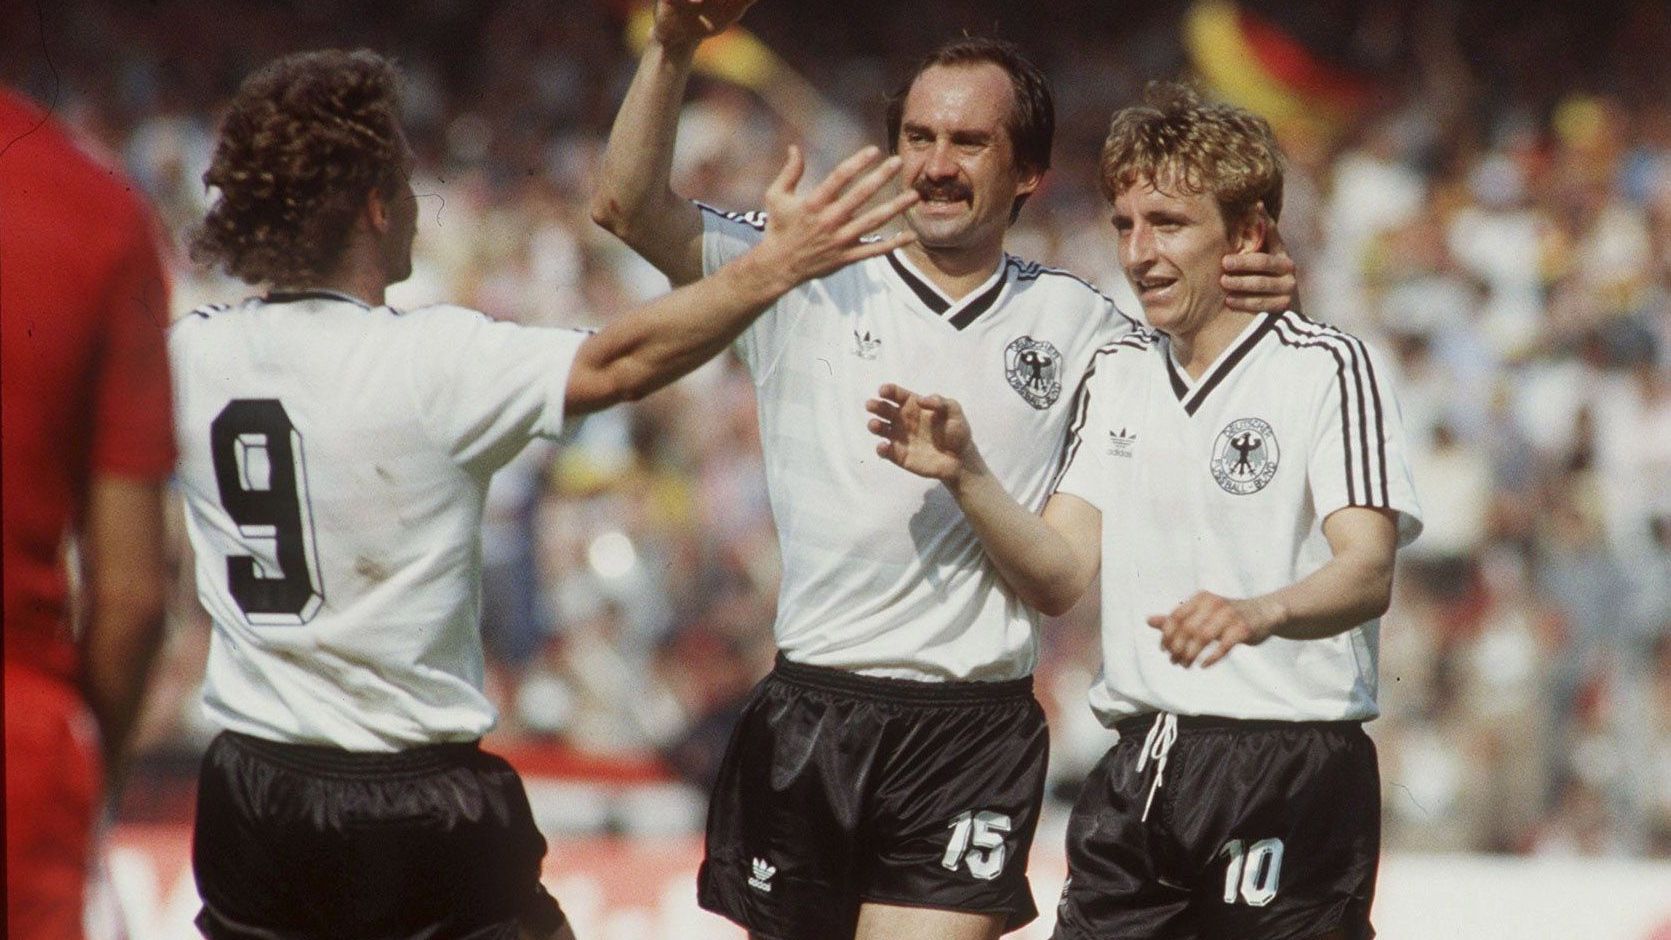 <strong>WM 1982, 2. Spieltag, Deutschland - Spanien 2:1</strong><br>Nach einem 0:0-Remis gegen England konnte die DFB-Elf gegen die Spanier ein Erfolgserlebnis feiern - dabei fand das Spiel auf gegnerischem Terrain, im ausverkauften Santiago Bernabeu statt. Das DFB-Team stellte die Weichen zu Beginn der zweiten Hälfte auf Sieg: Kölns Littbarski eröffnete das Ergebnis, Fischer legte zum 2:0 nach ...